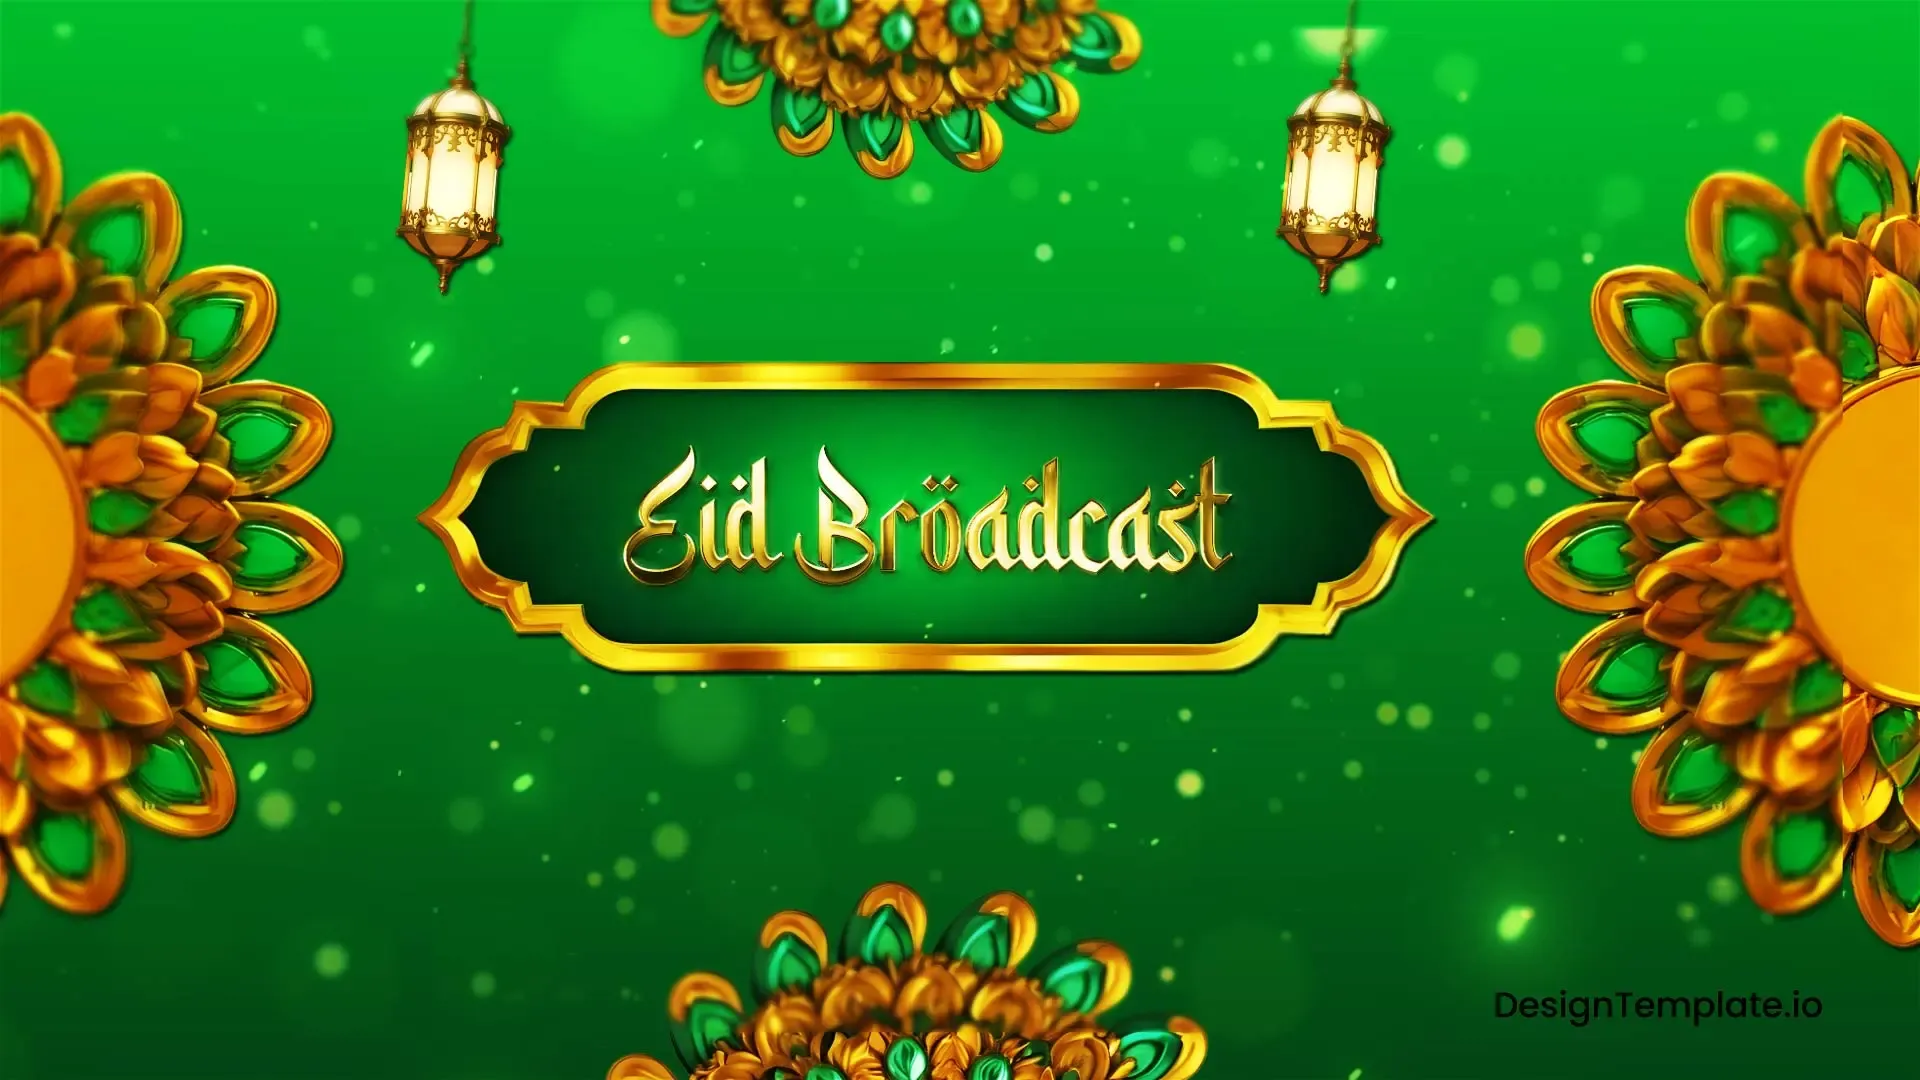 Trendy Eid Broadcast Package